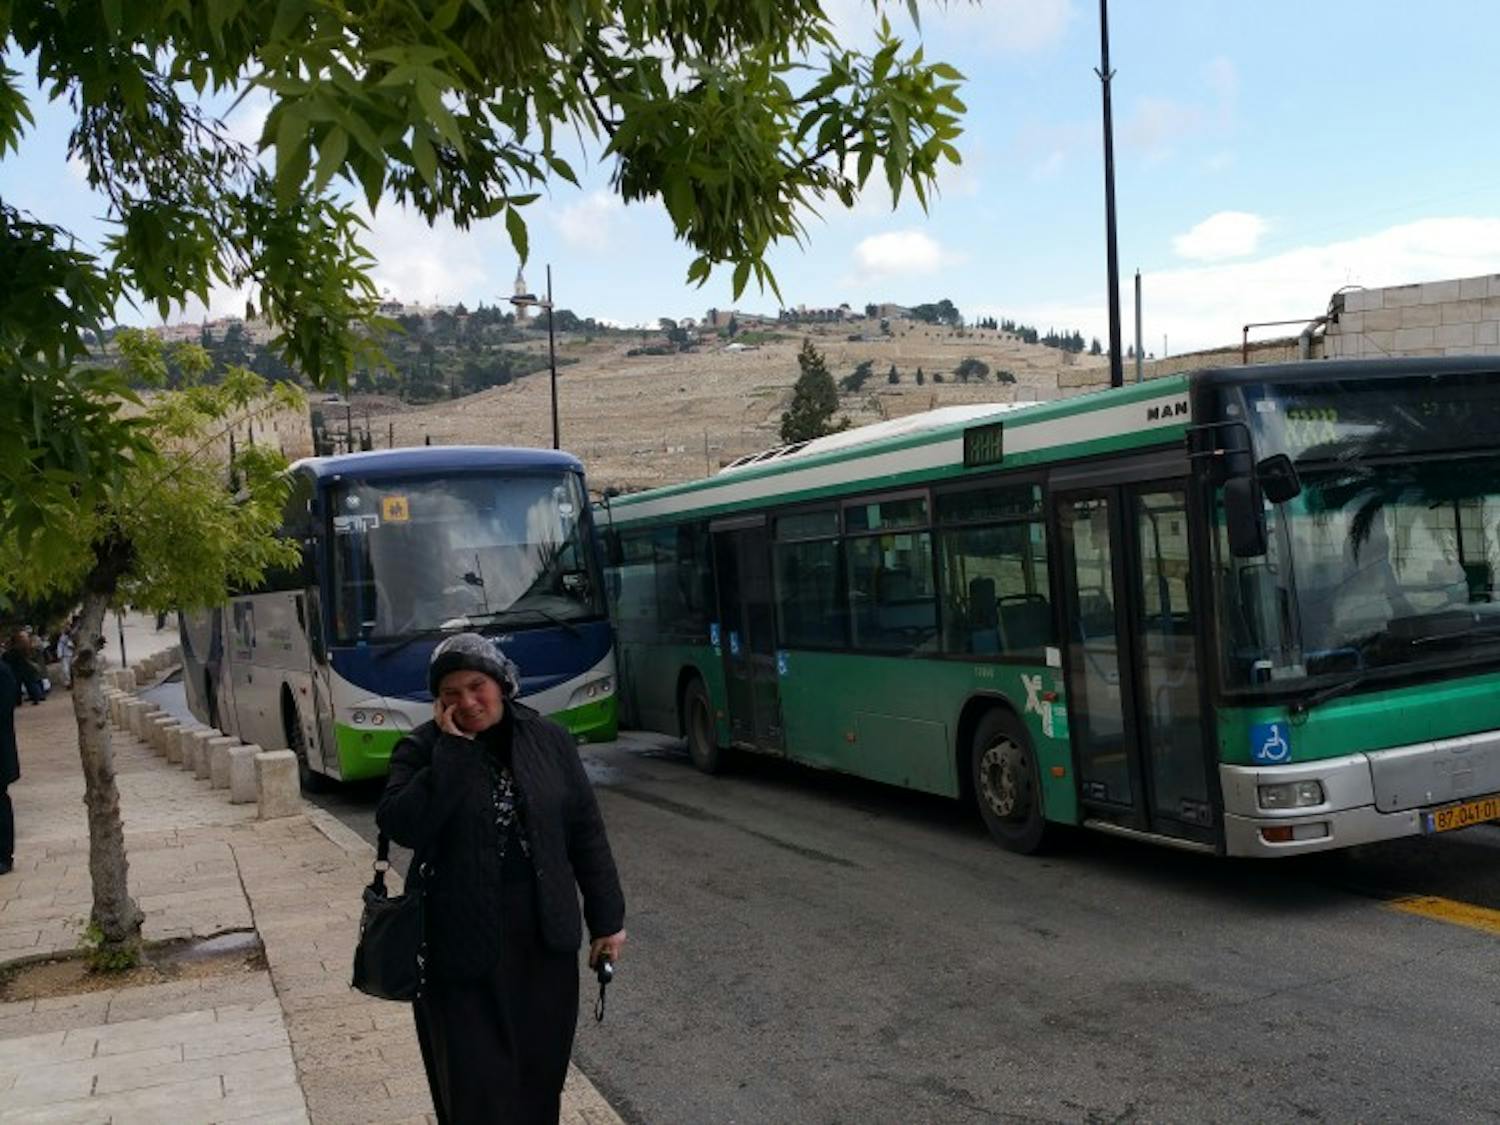 Jerusalem-bus-accid.-Crop-out-lady-please.jpg